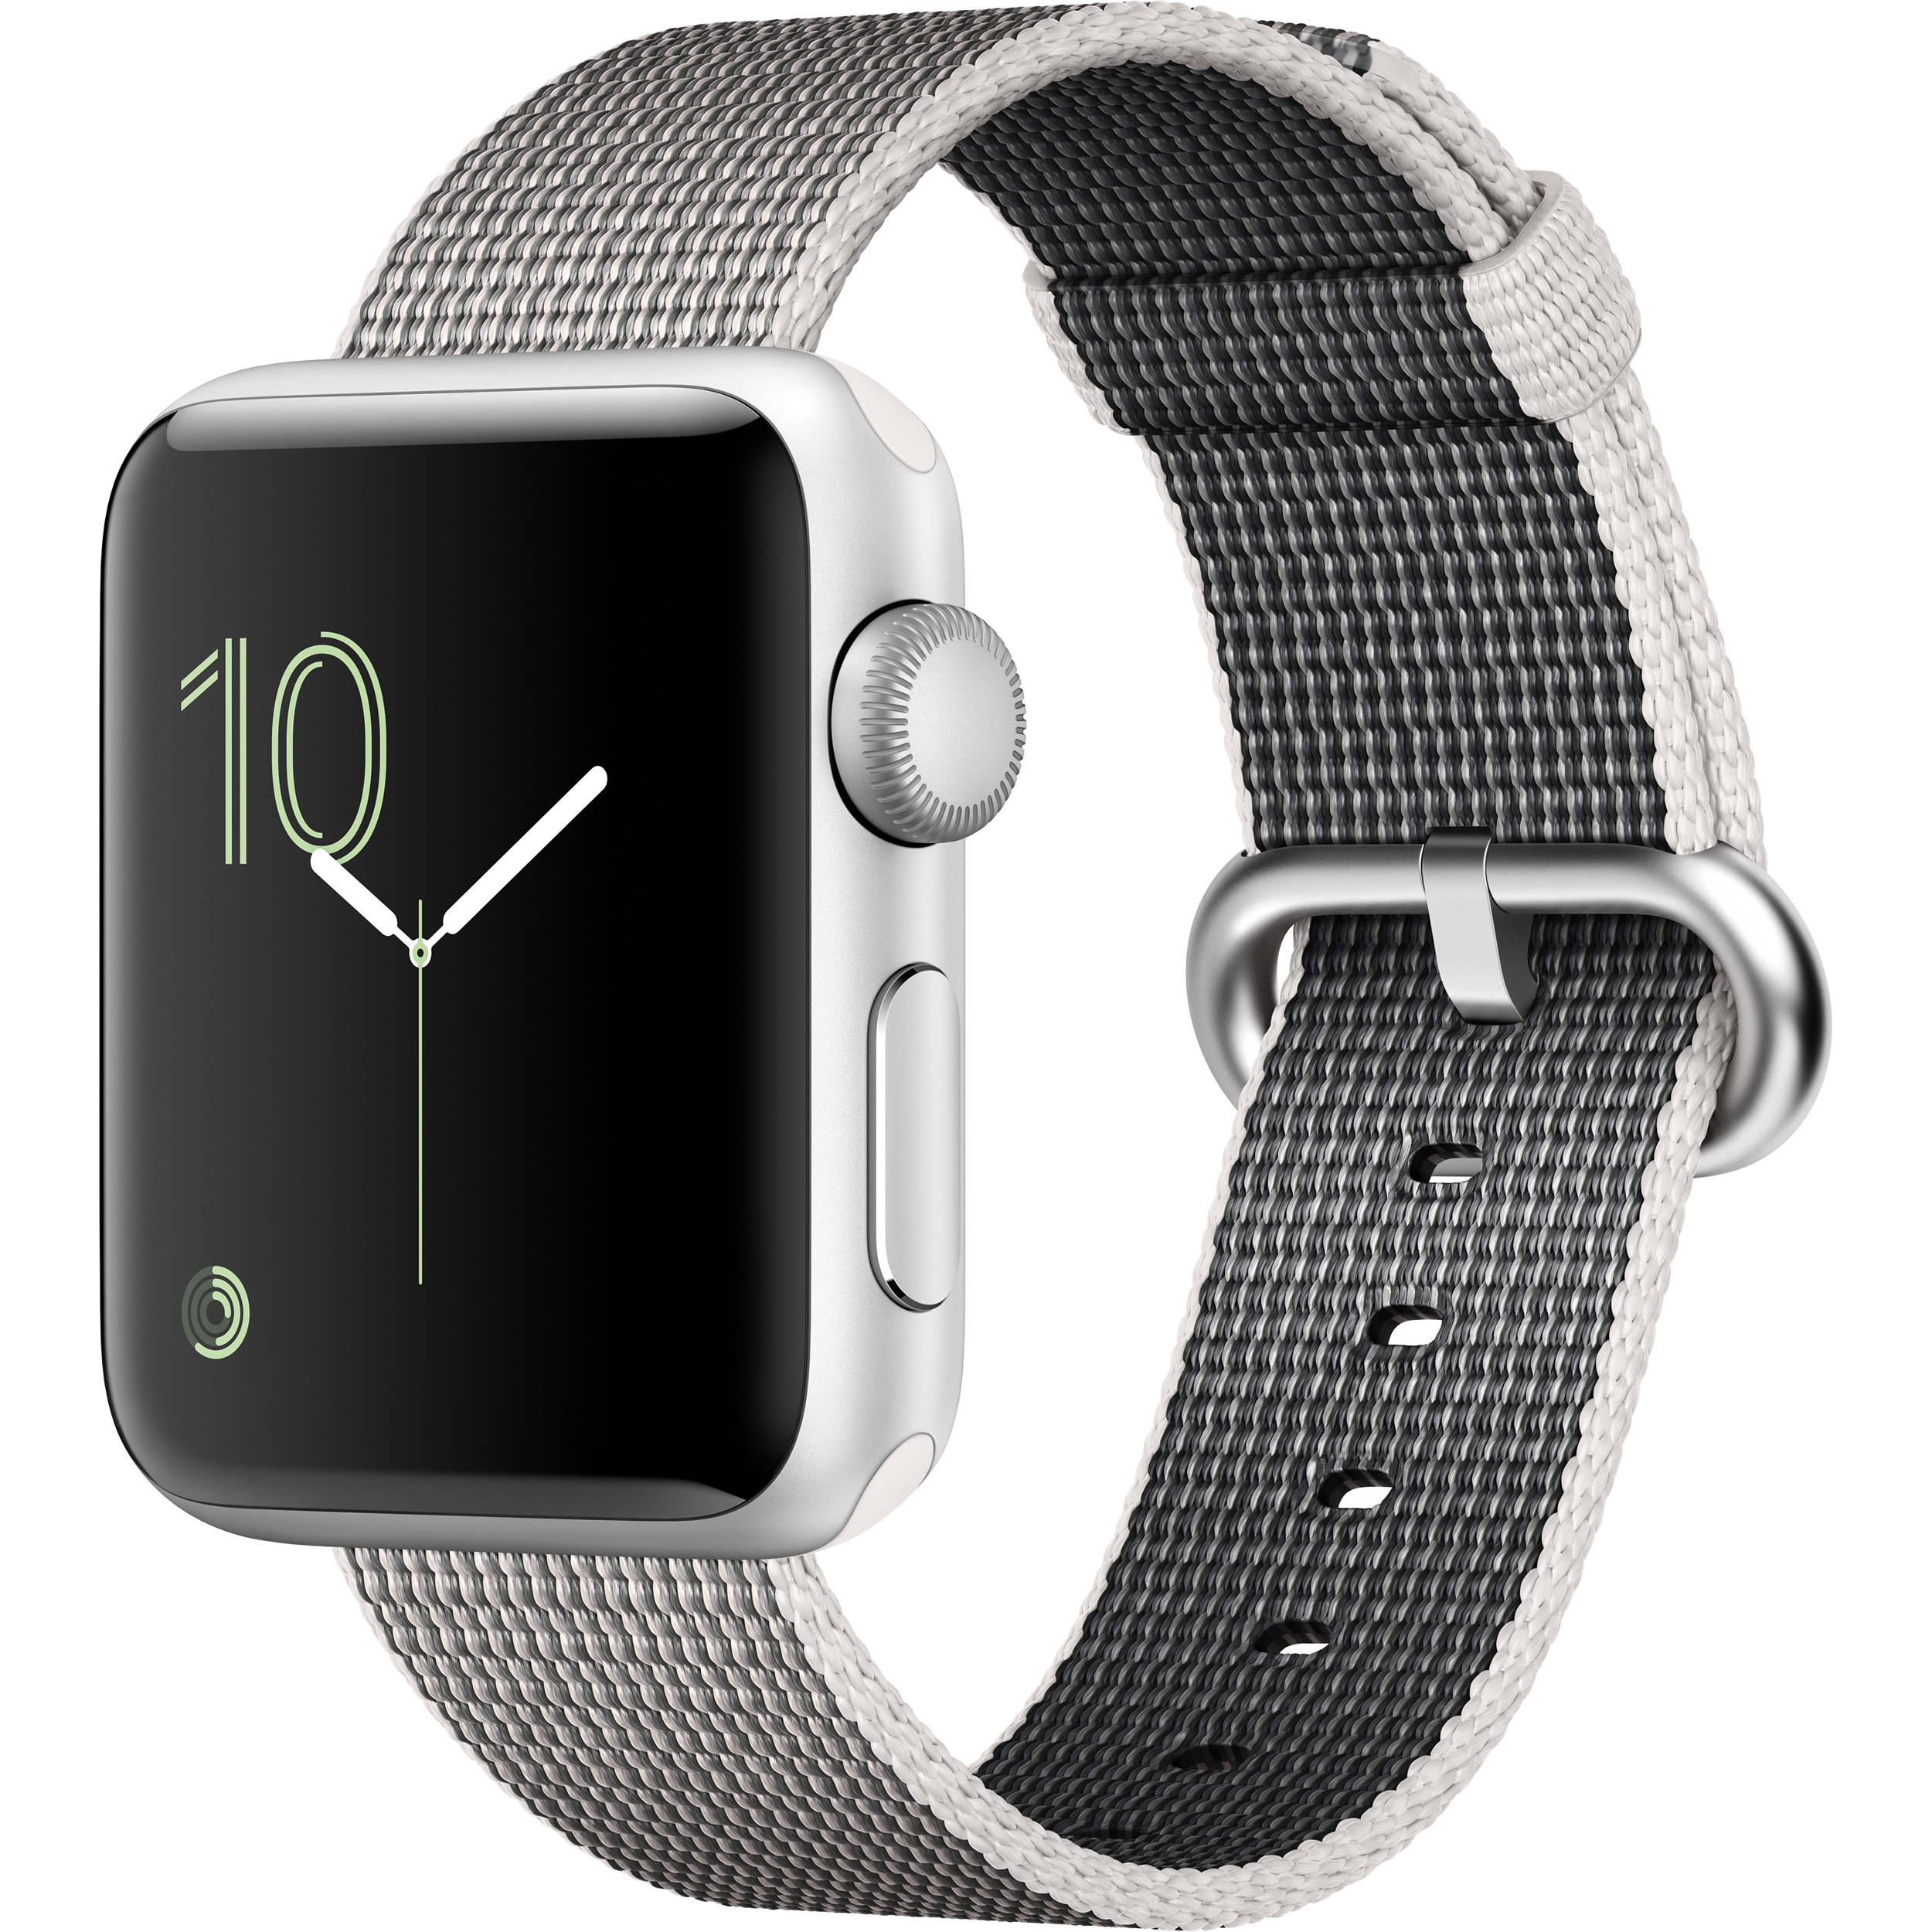 Часы браслет apple watch. Смарт часы эпл вотч. Apple watch Series 2. Эпл вотч 42мм. Часы Apple watch Series 2 38mm with Woven nylon.